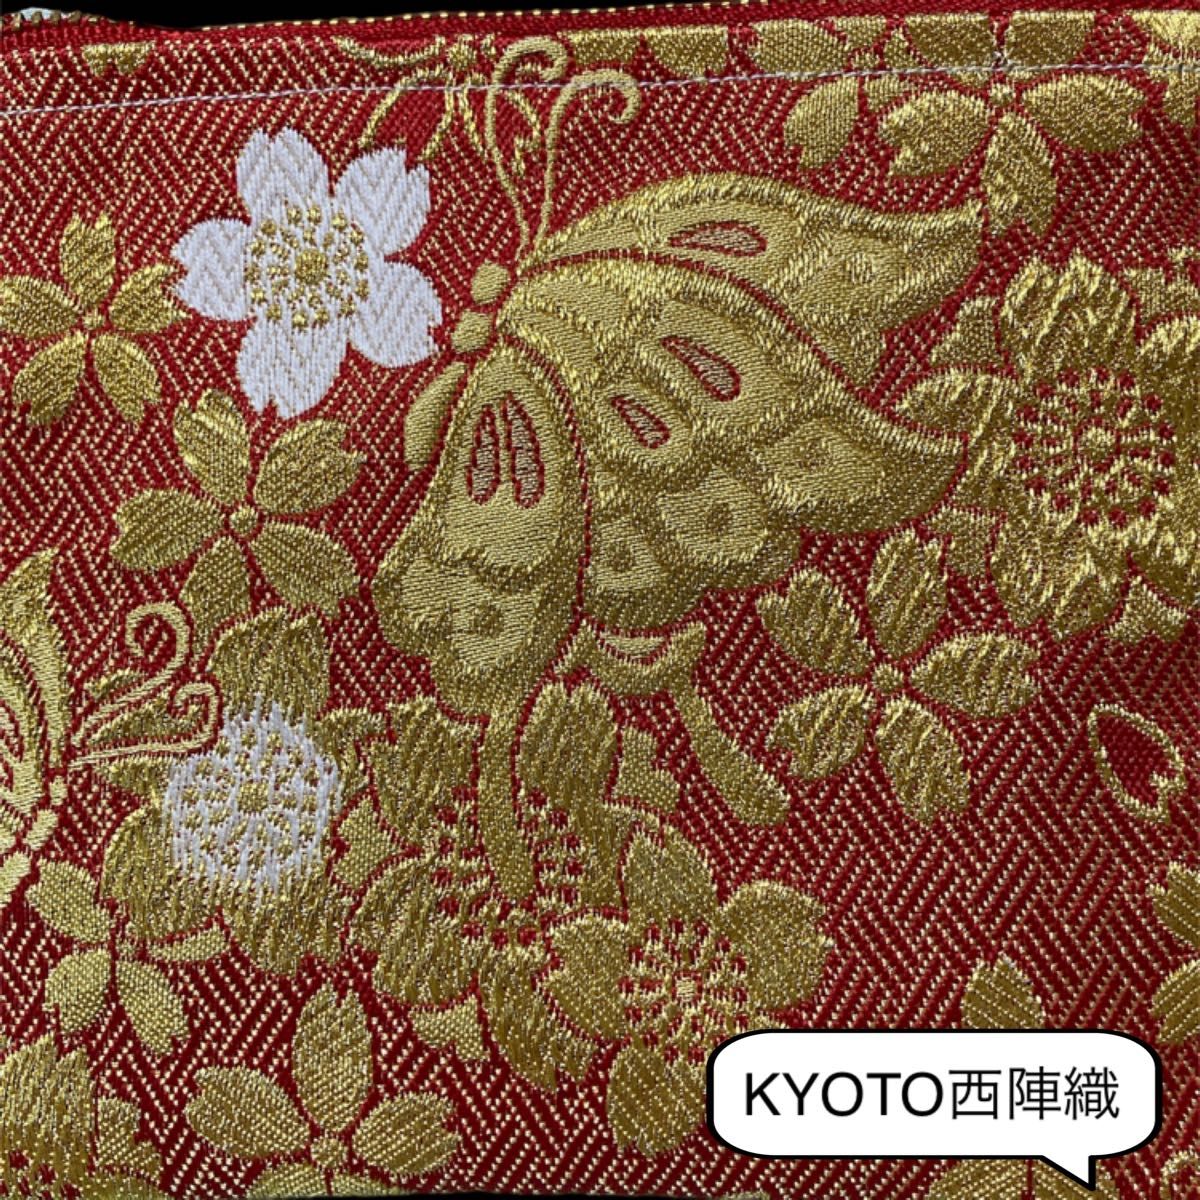 贅沢で大人可愛い1つは欲しい和のぽーち 豪華で美しい日本の伝統KYOTO西陣織 多目的ぽーち【No.003】